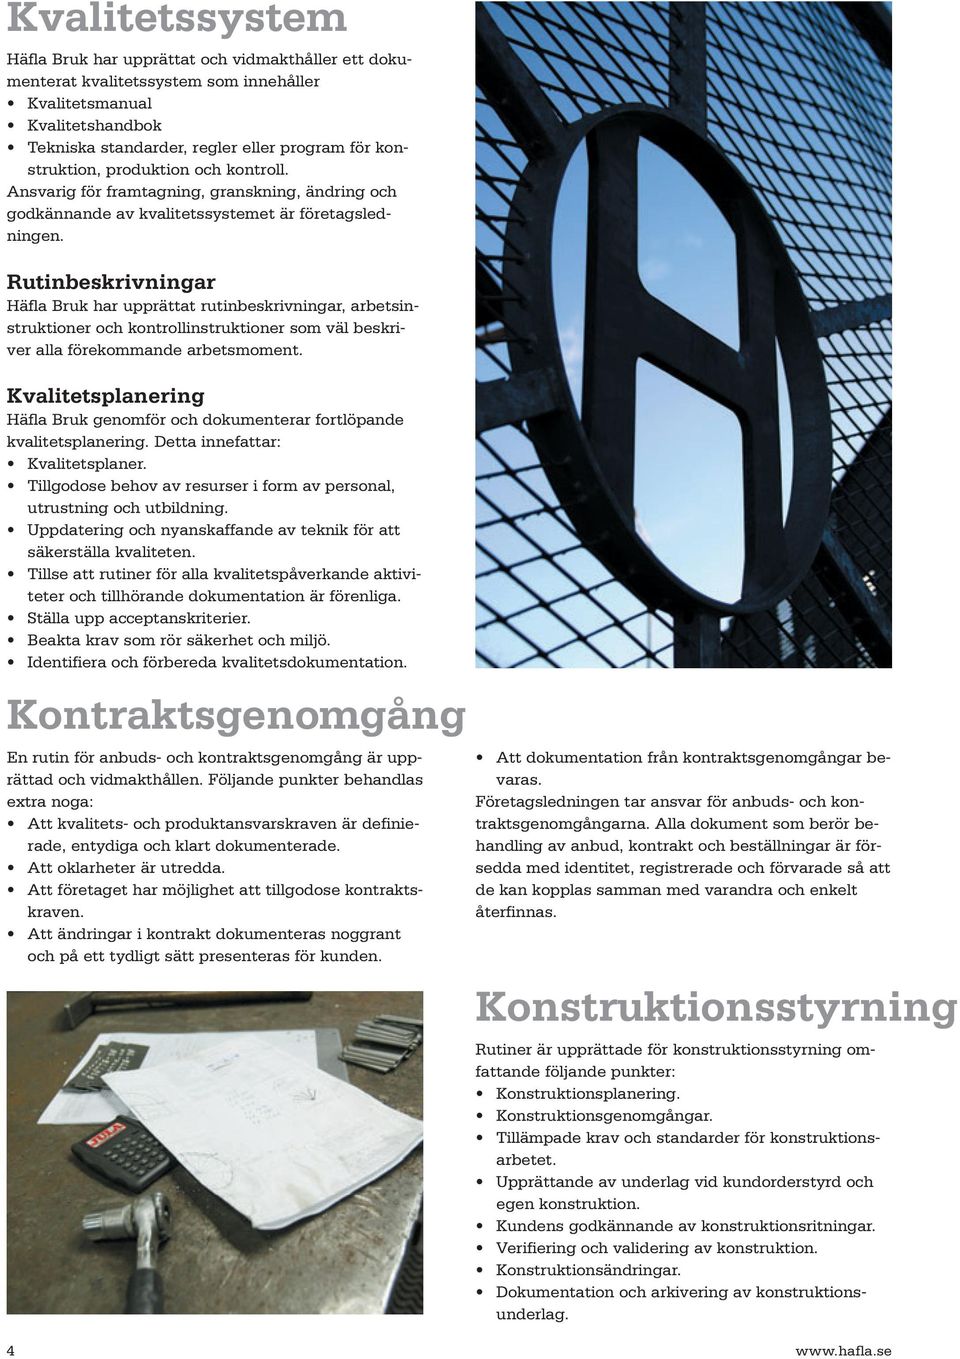 Rutinbeskrivningar Häfla Bruk har upprättat rutinbeskrivningar, arbetsinstruktioner och kontrollinstruktioner som väl beskriver alla förekommande arbetsmoment.